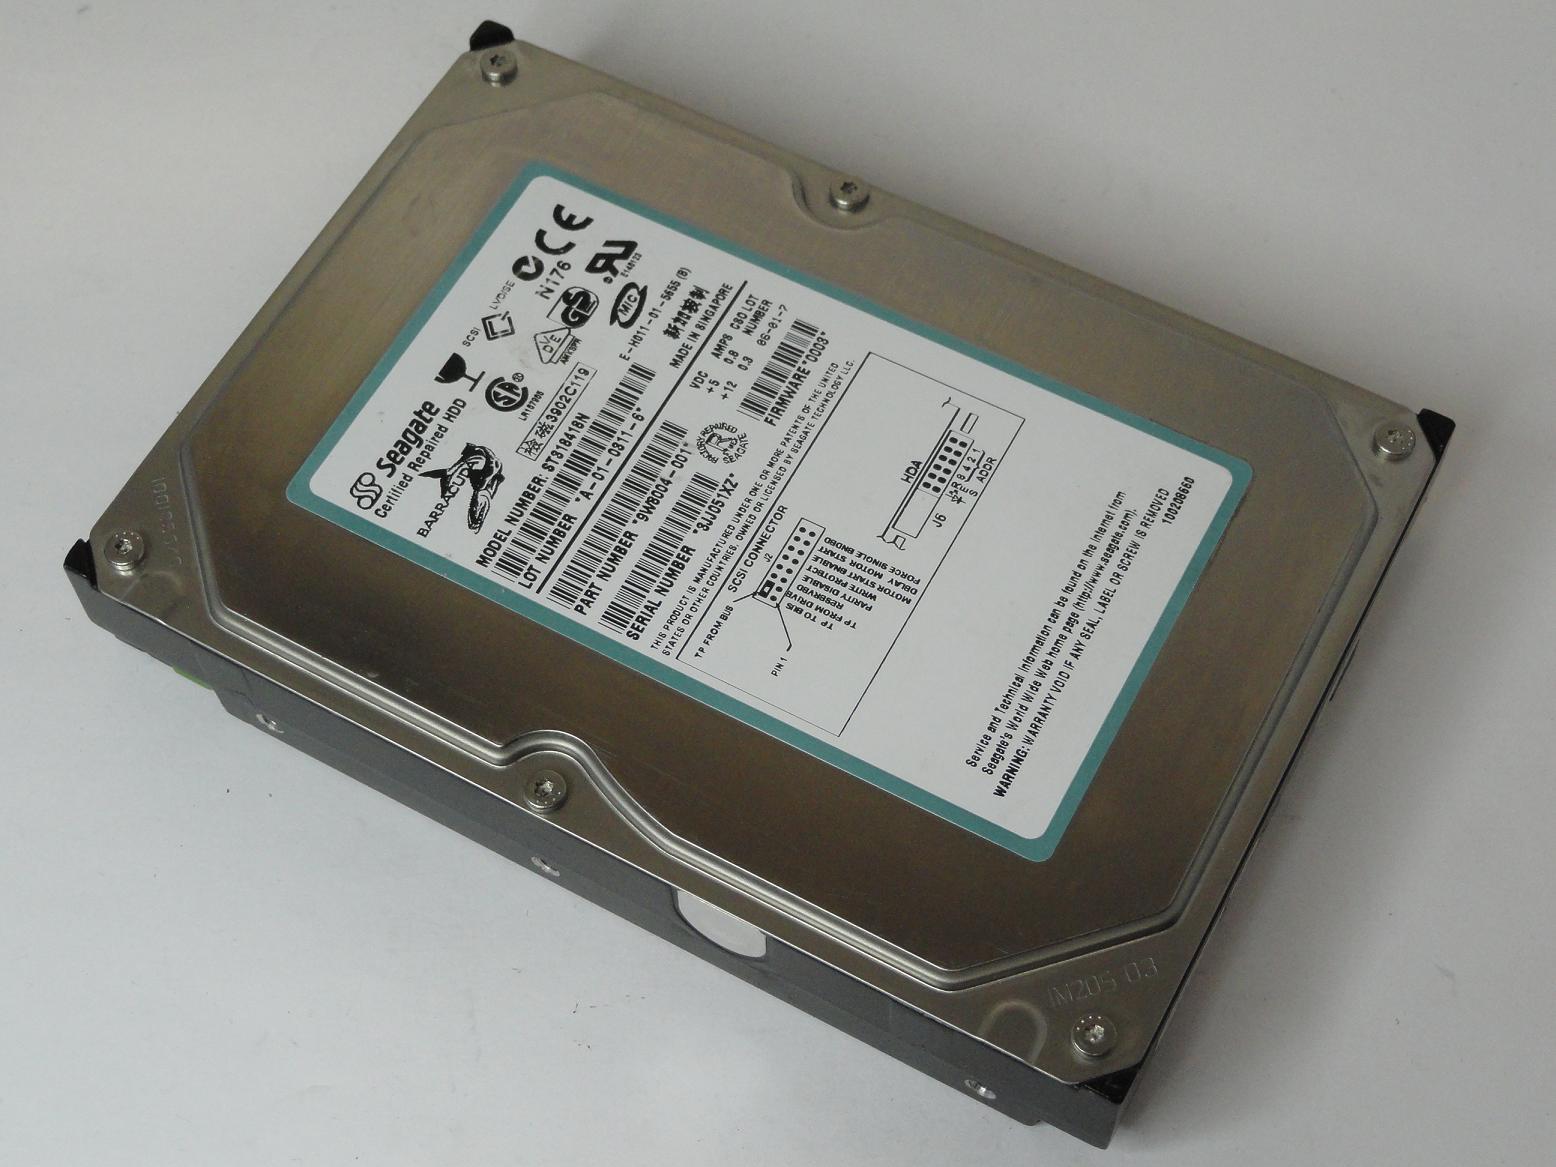 9W8004-001 - Seagate 18GB SCSI 50 Pin 7200rpm 3.5in Factory Recertified Barracuda HDD - Refurbished